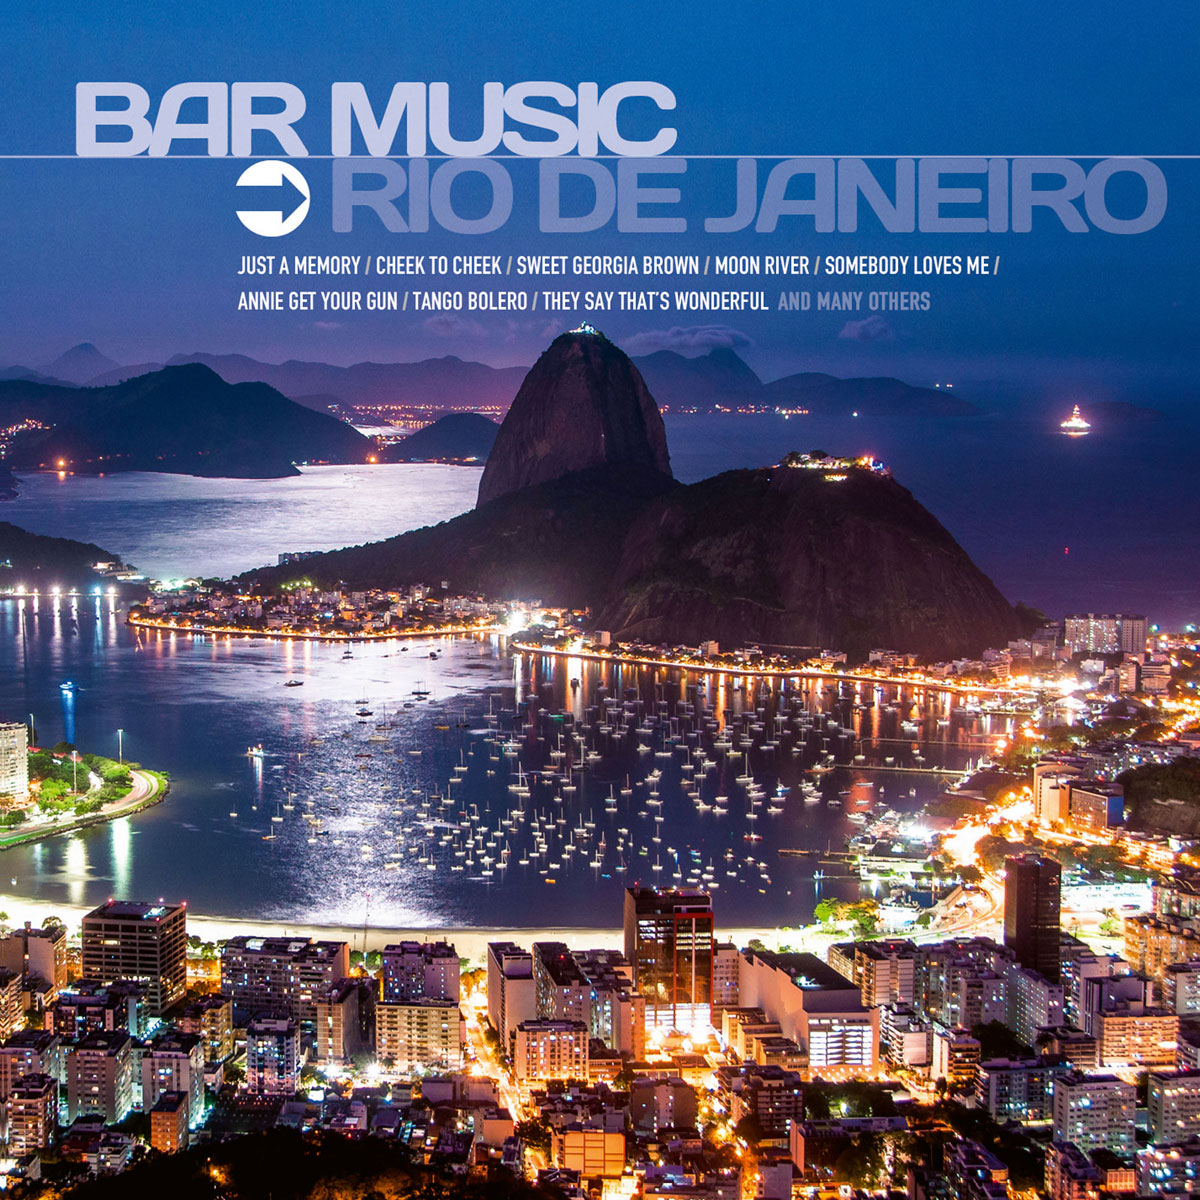 BAR MUSIC - Rio De Janeiro